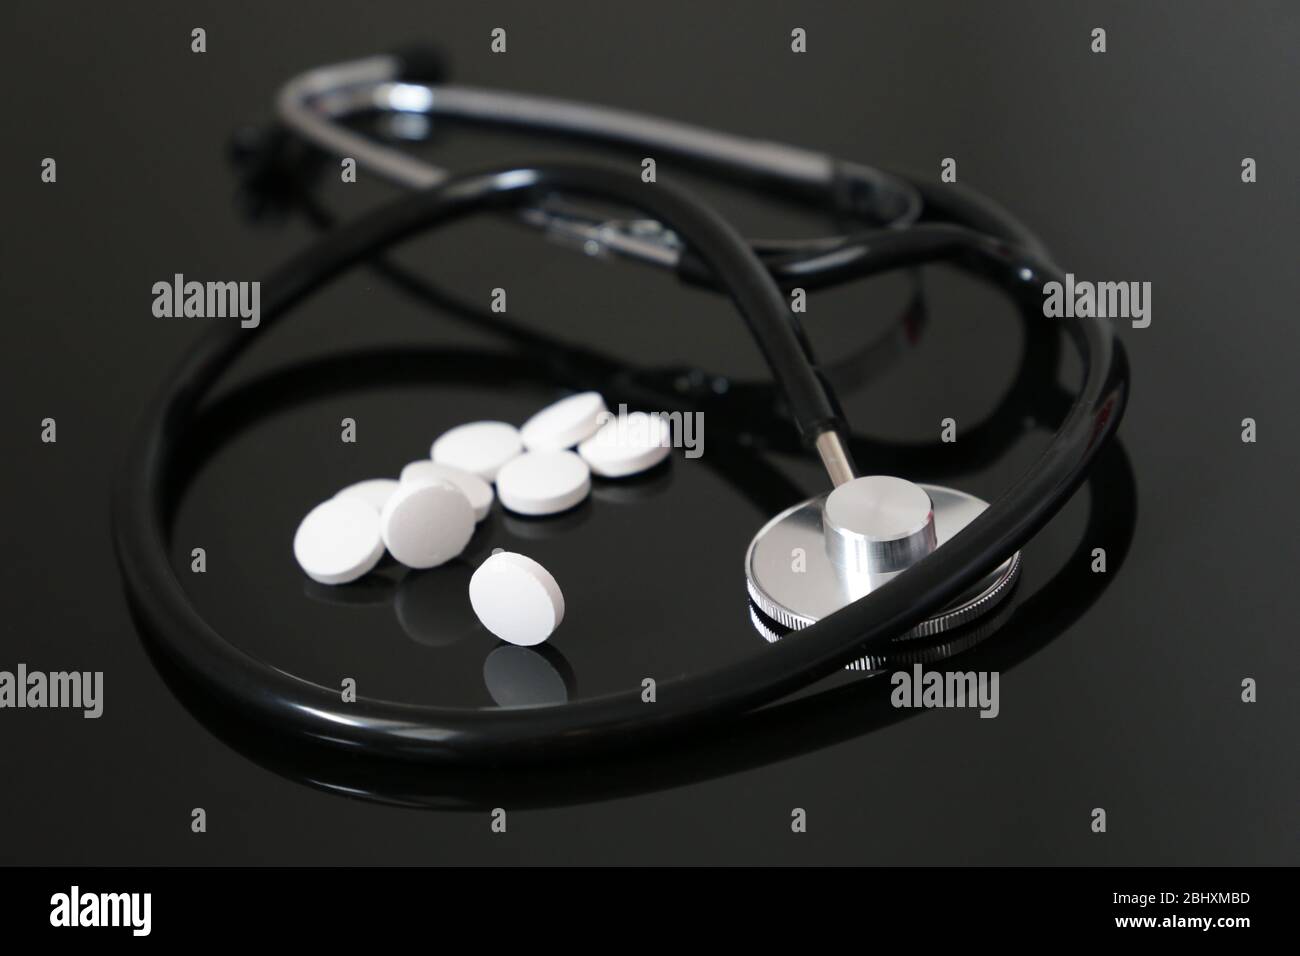 Gesundheit und Kardiologie, Stethoskop und weiße Pillen auf dunklem Glastisch. Konzept der Diagnose, Behandlung von Herzerkrankungen Stockfoto